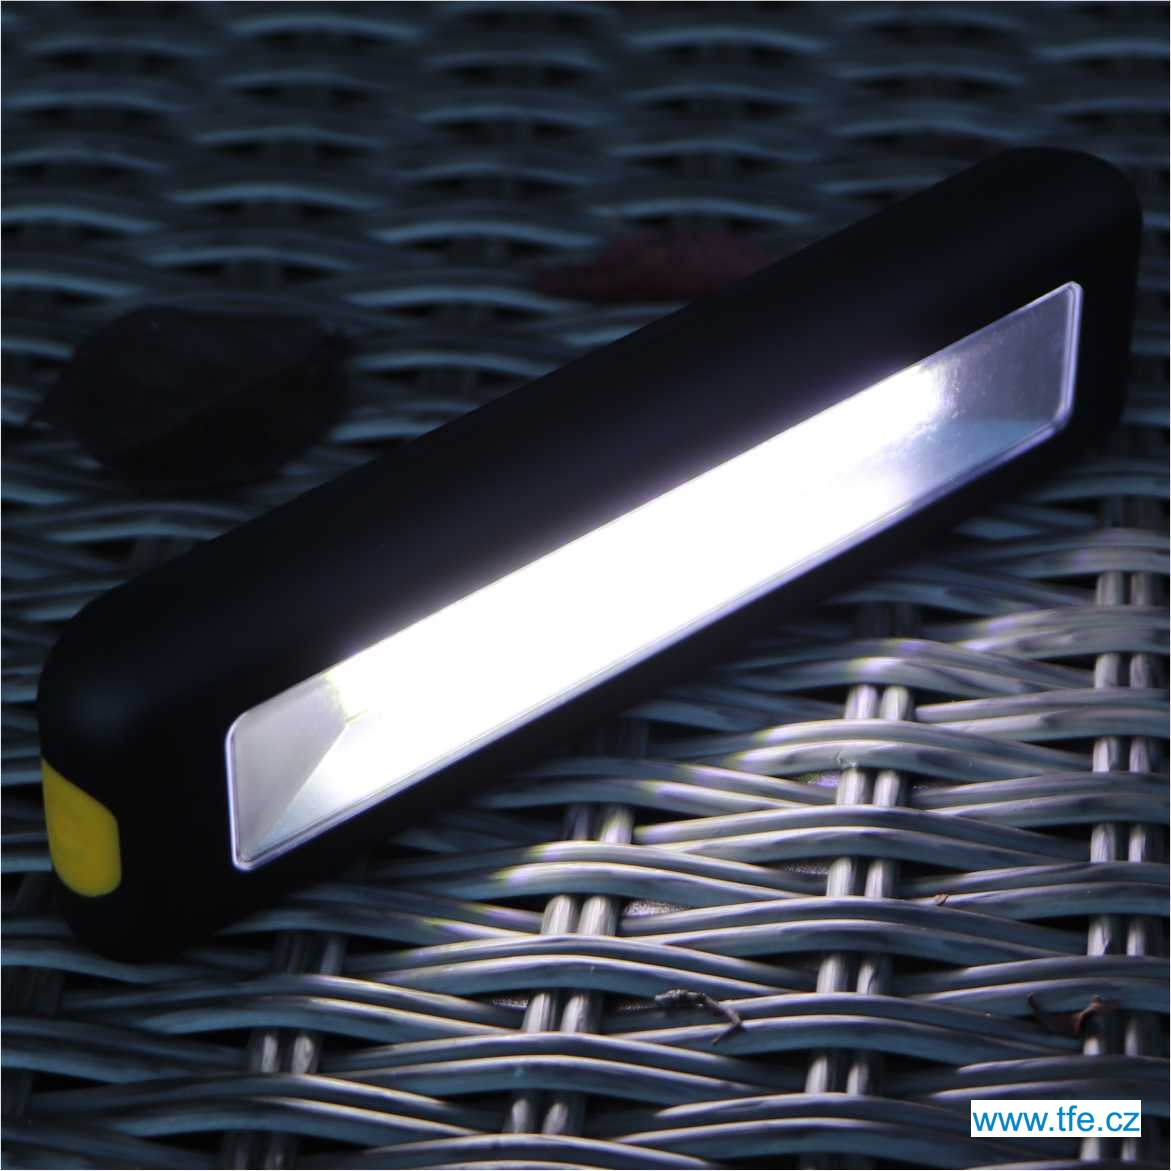 Bivakové LED světlo s příposlechem FLACARP FL5